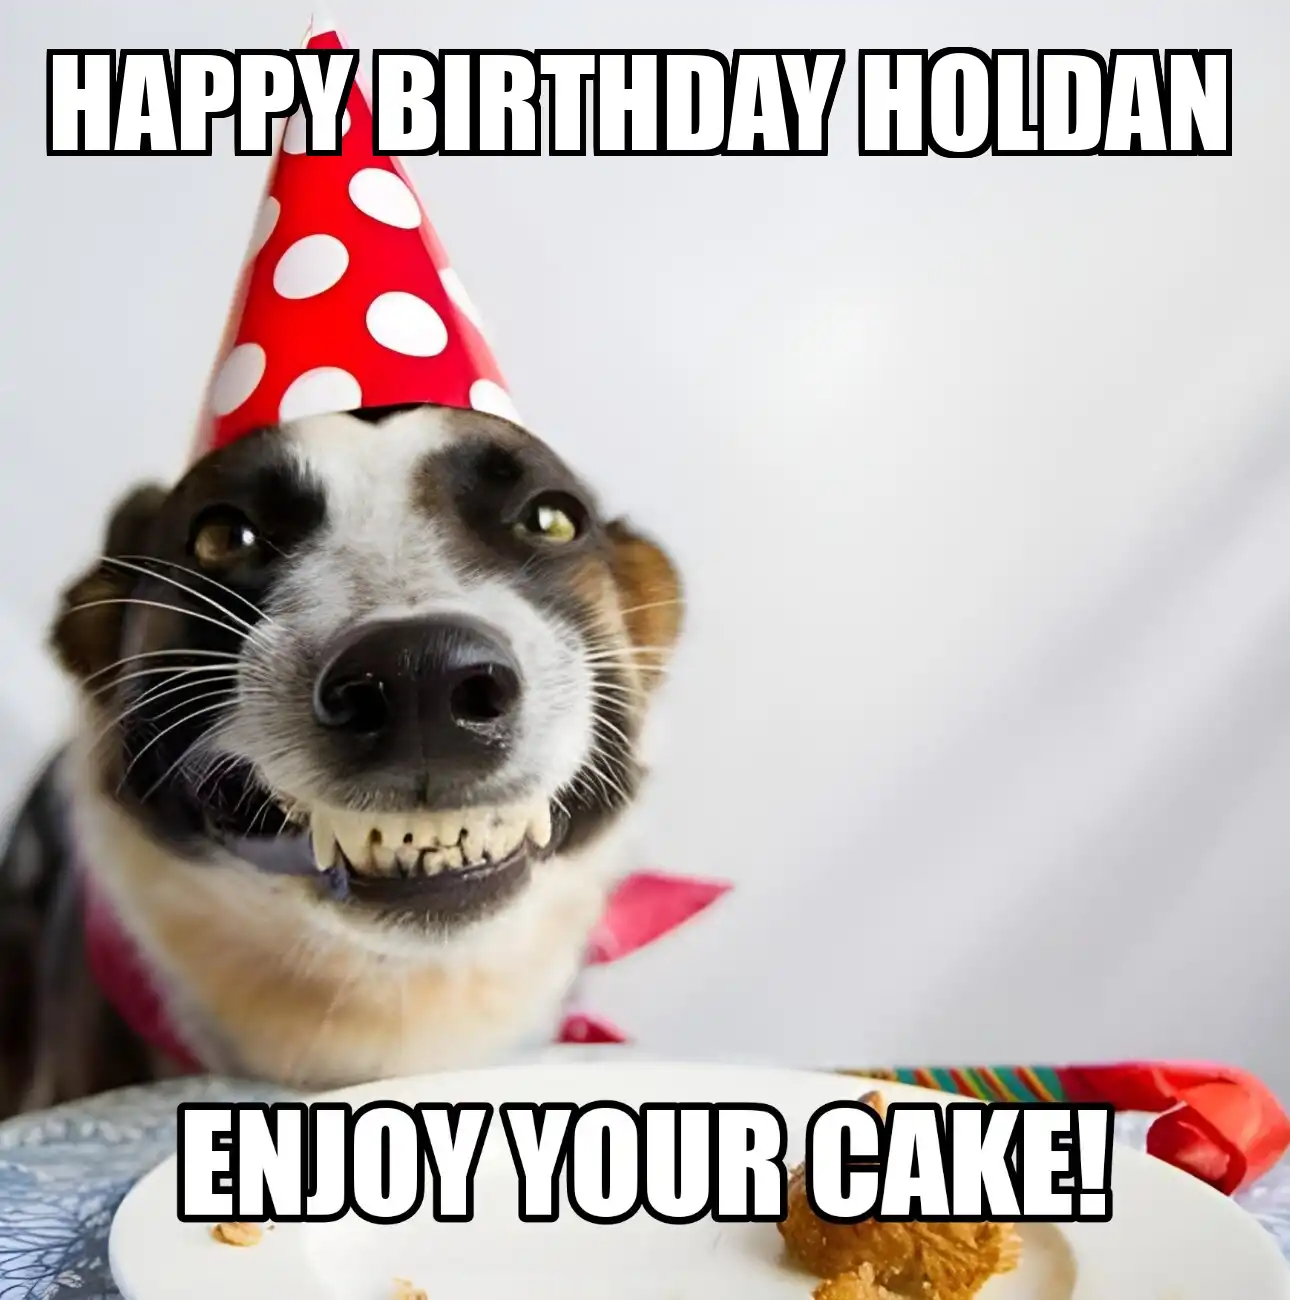 Happy Birthday Holdan Enjoy Your Cake Dog Meme